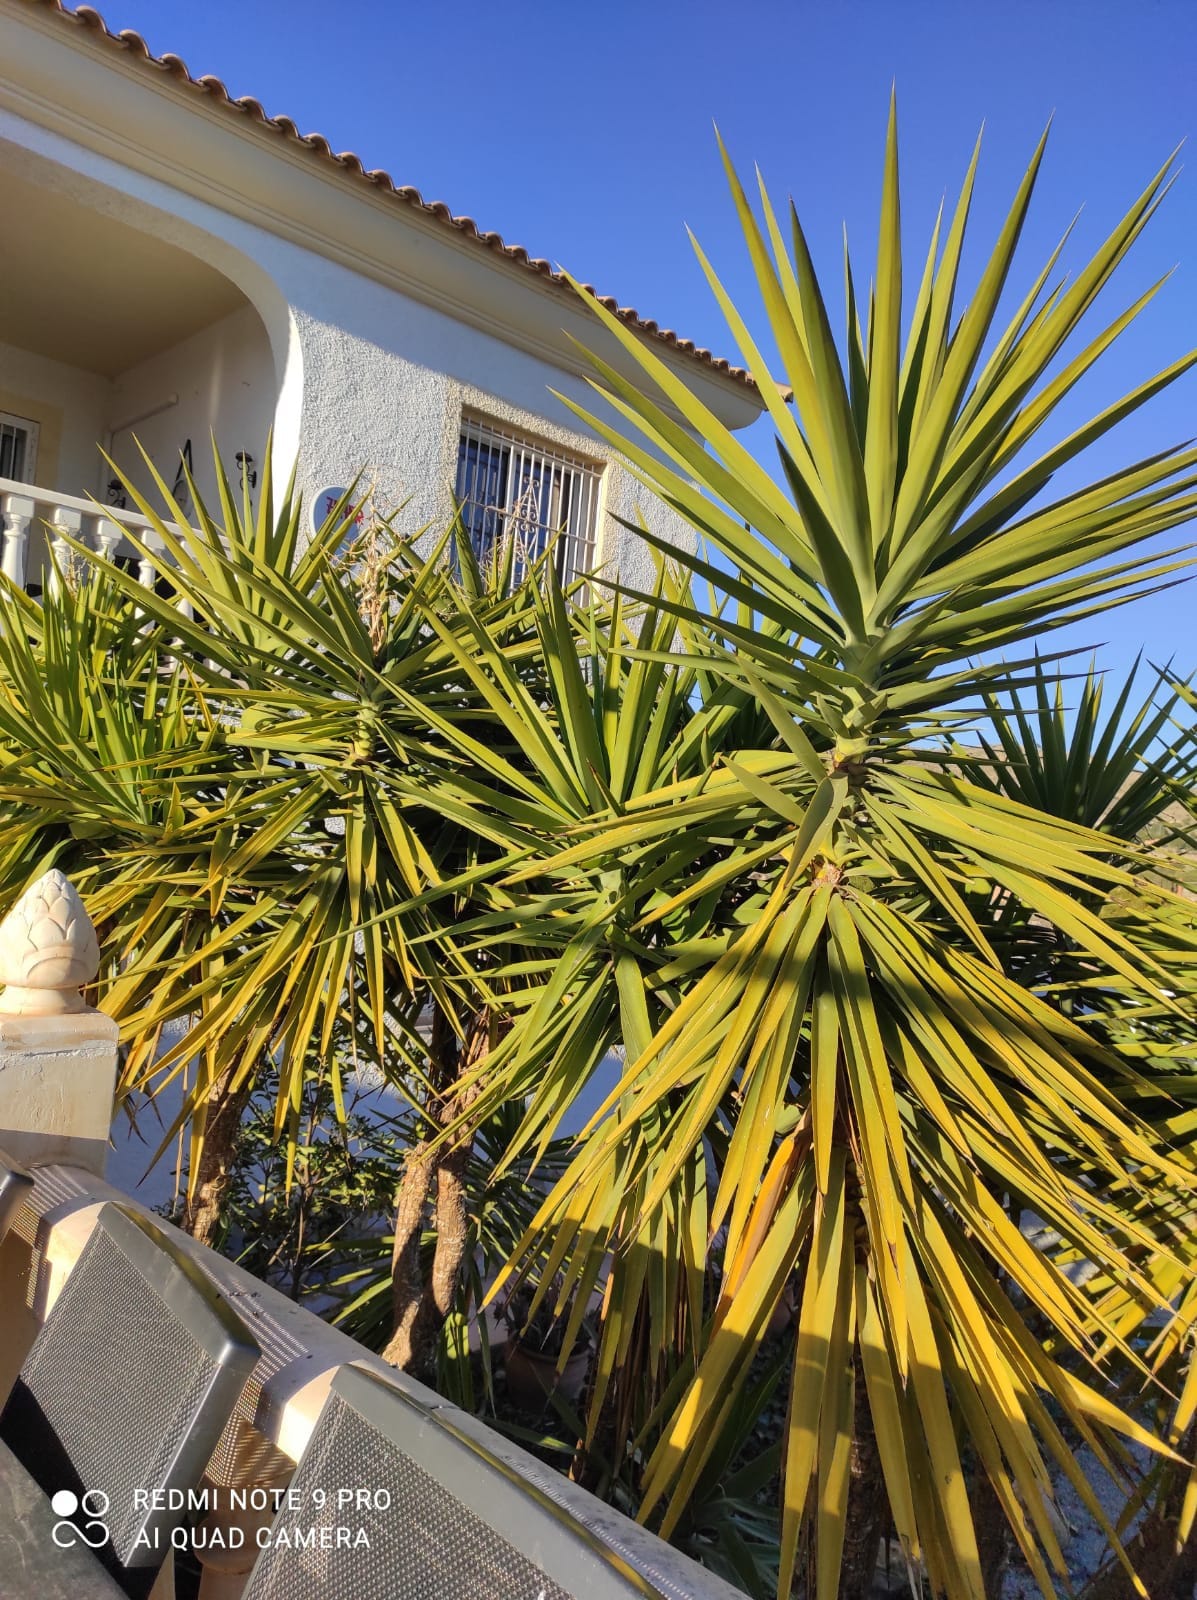 Sunrise Retreat; 4-Bed Villa in Alicante